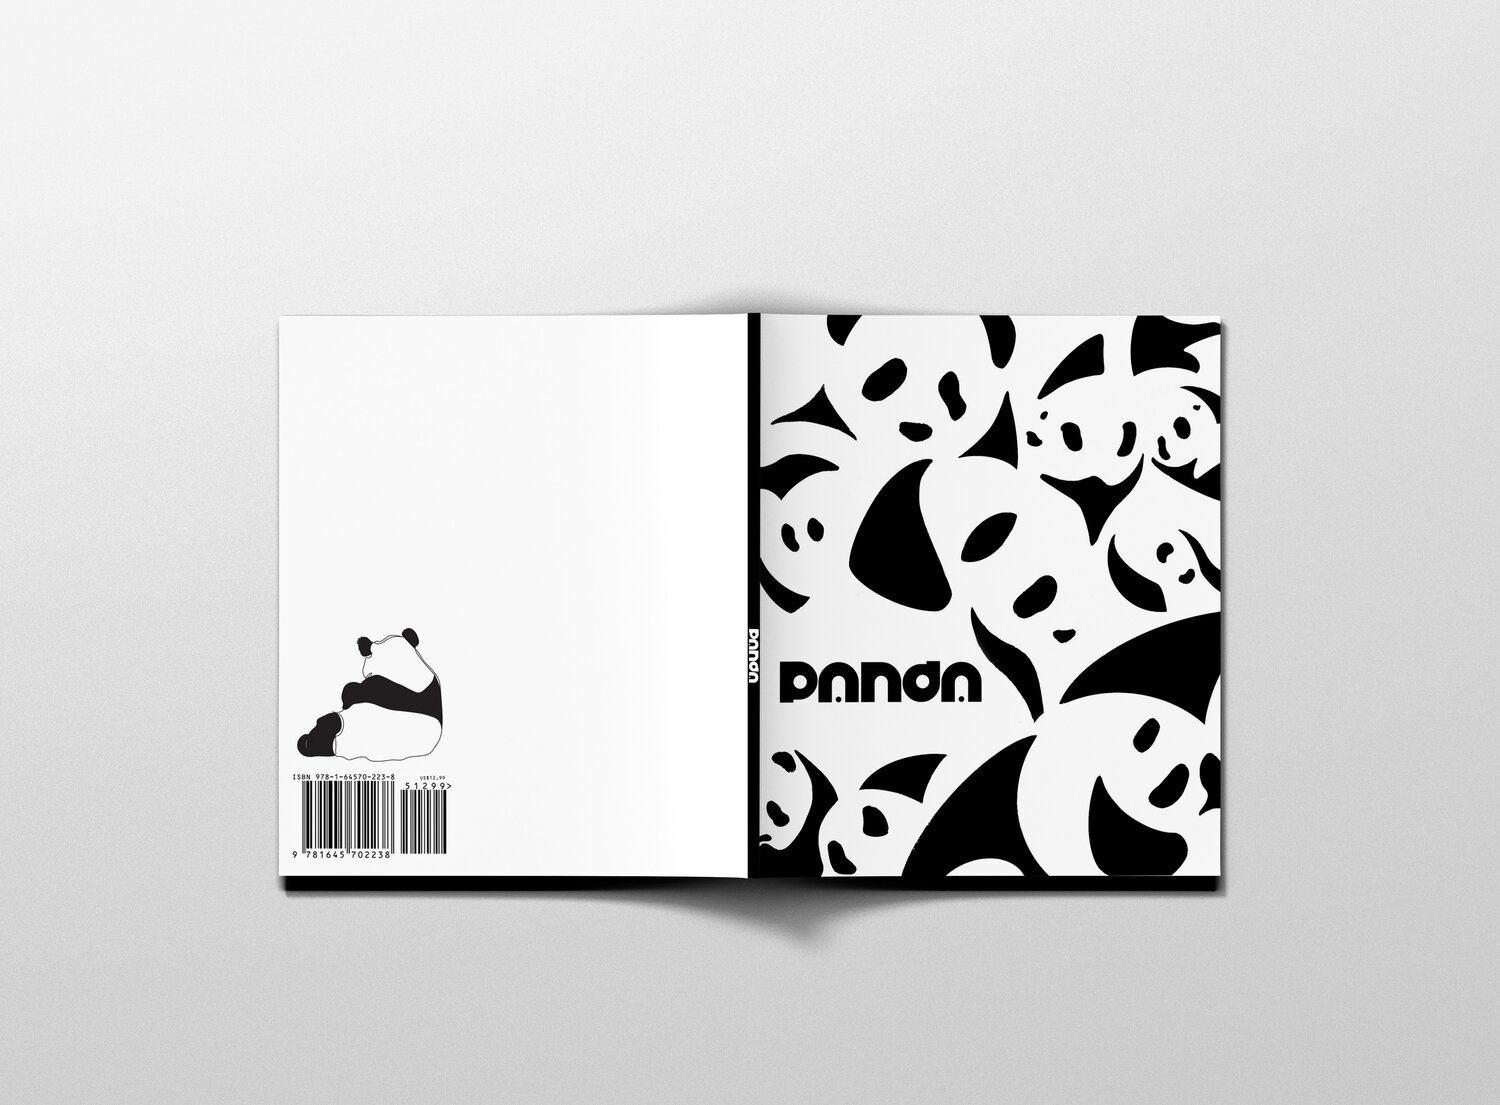 Panda book cover